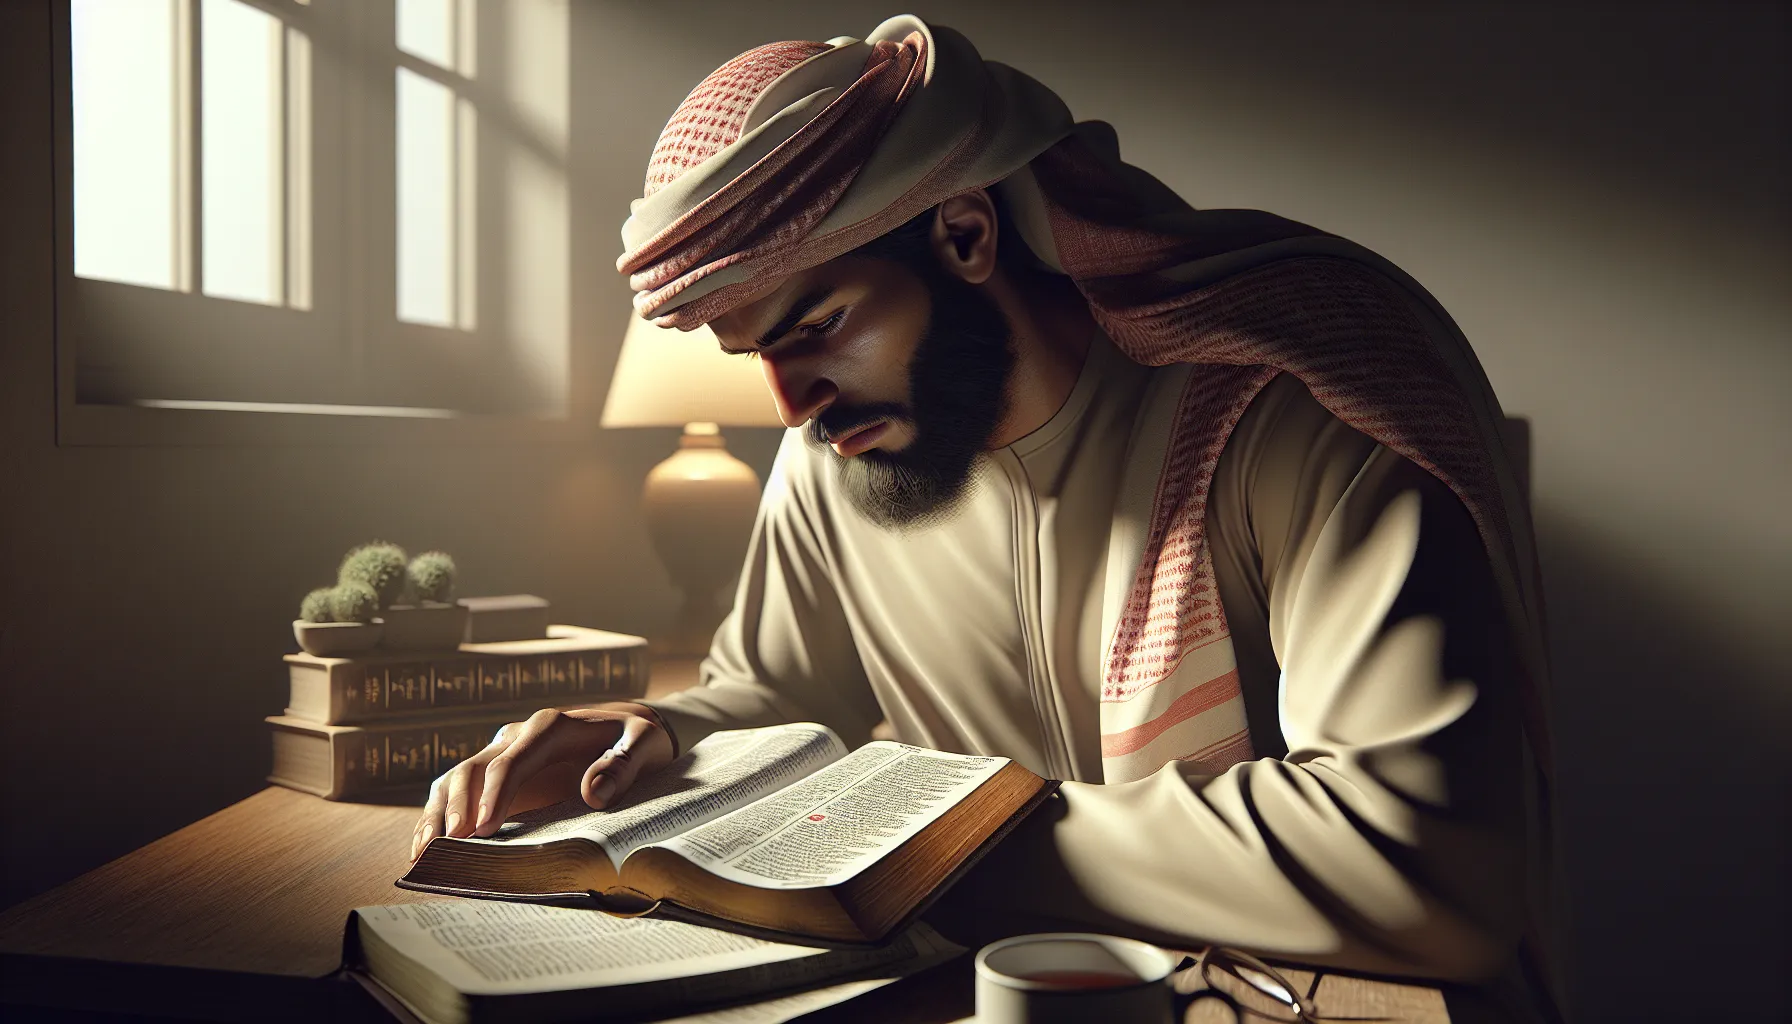 Imagen ilustrativa de una persona leyendo la Biblia y reflexionando sobre el propósito de vida